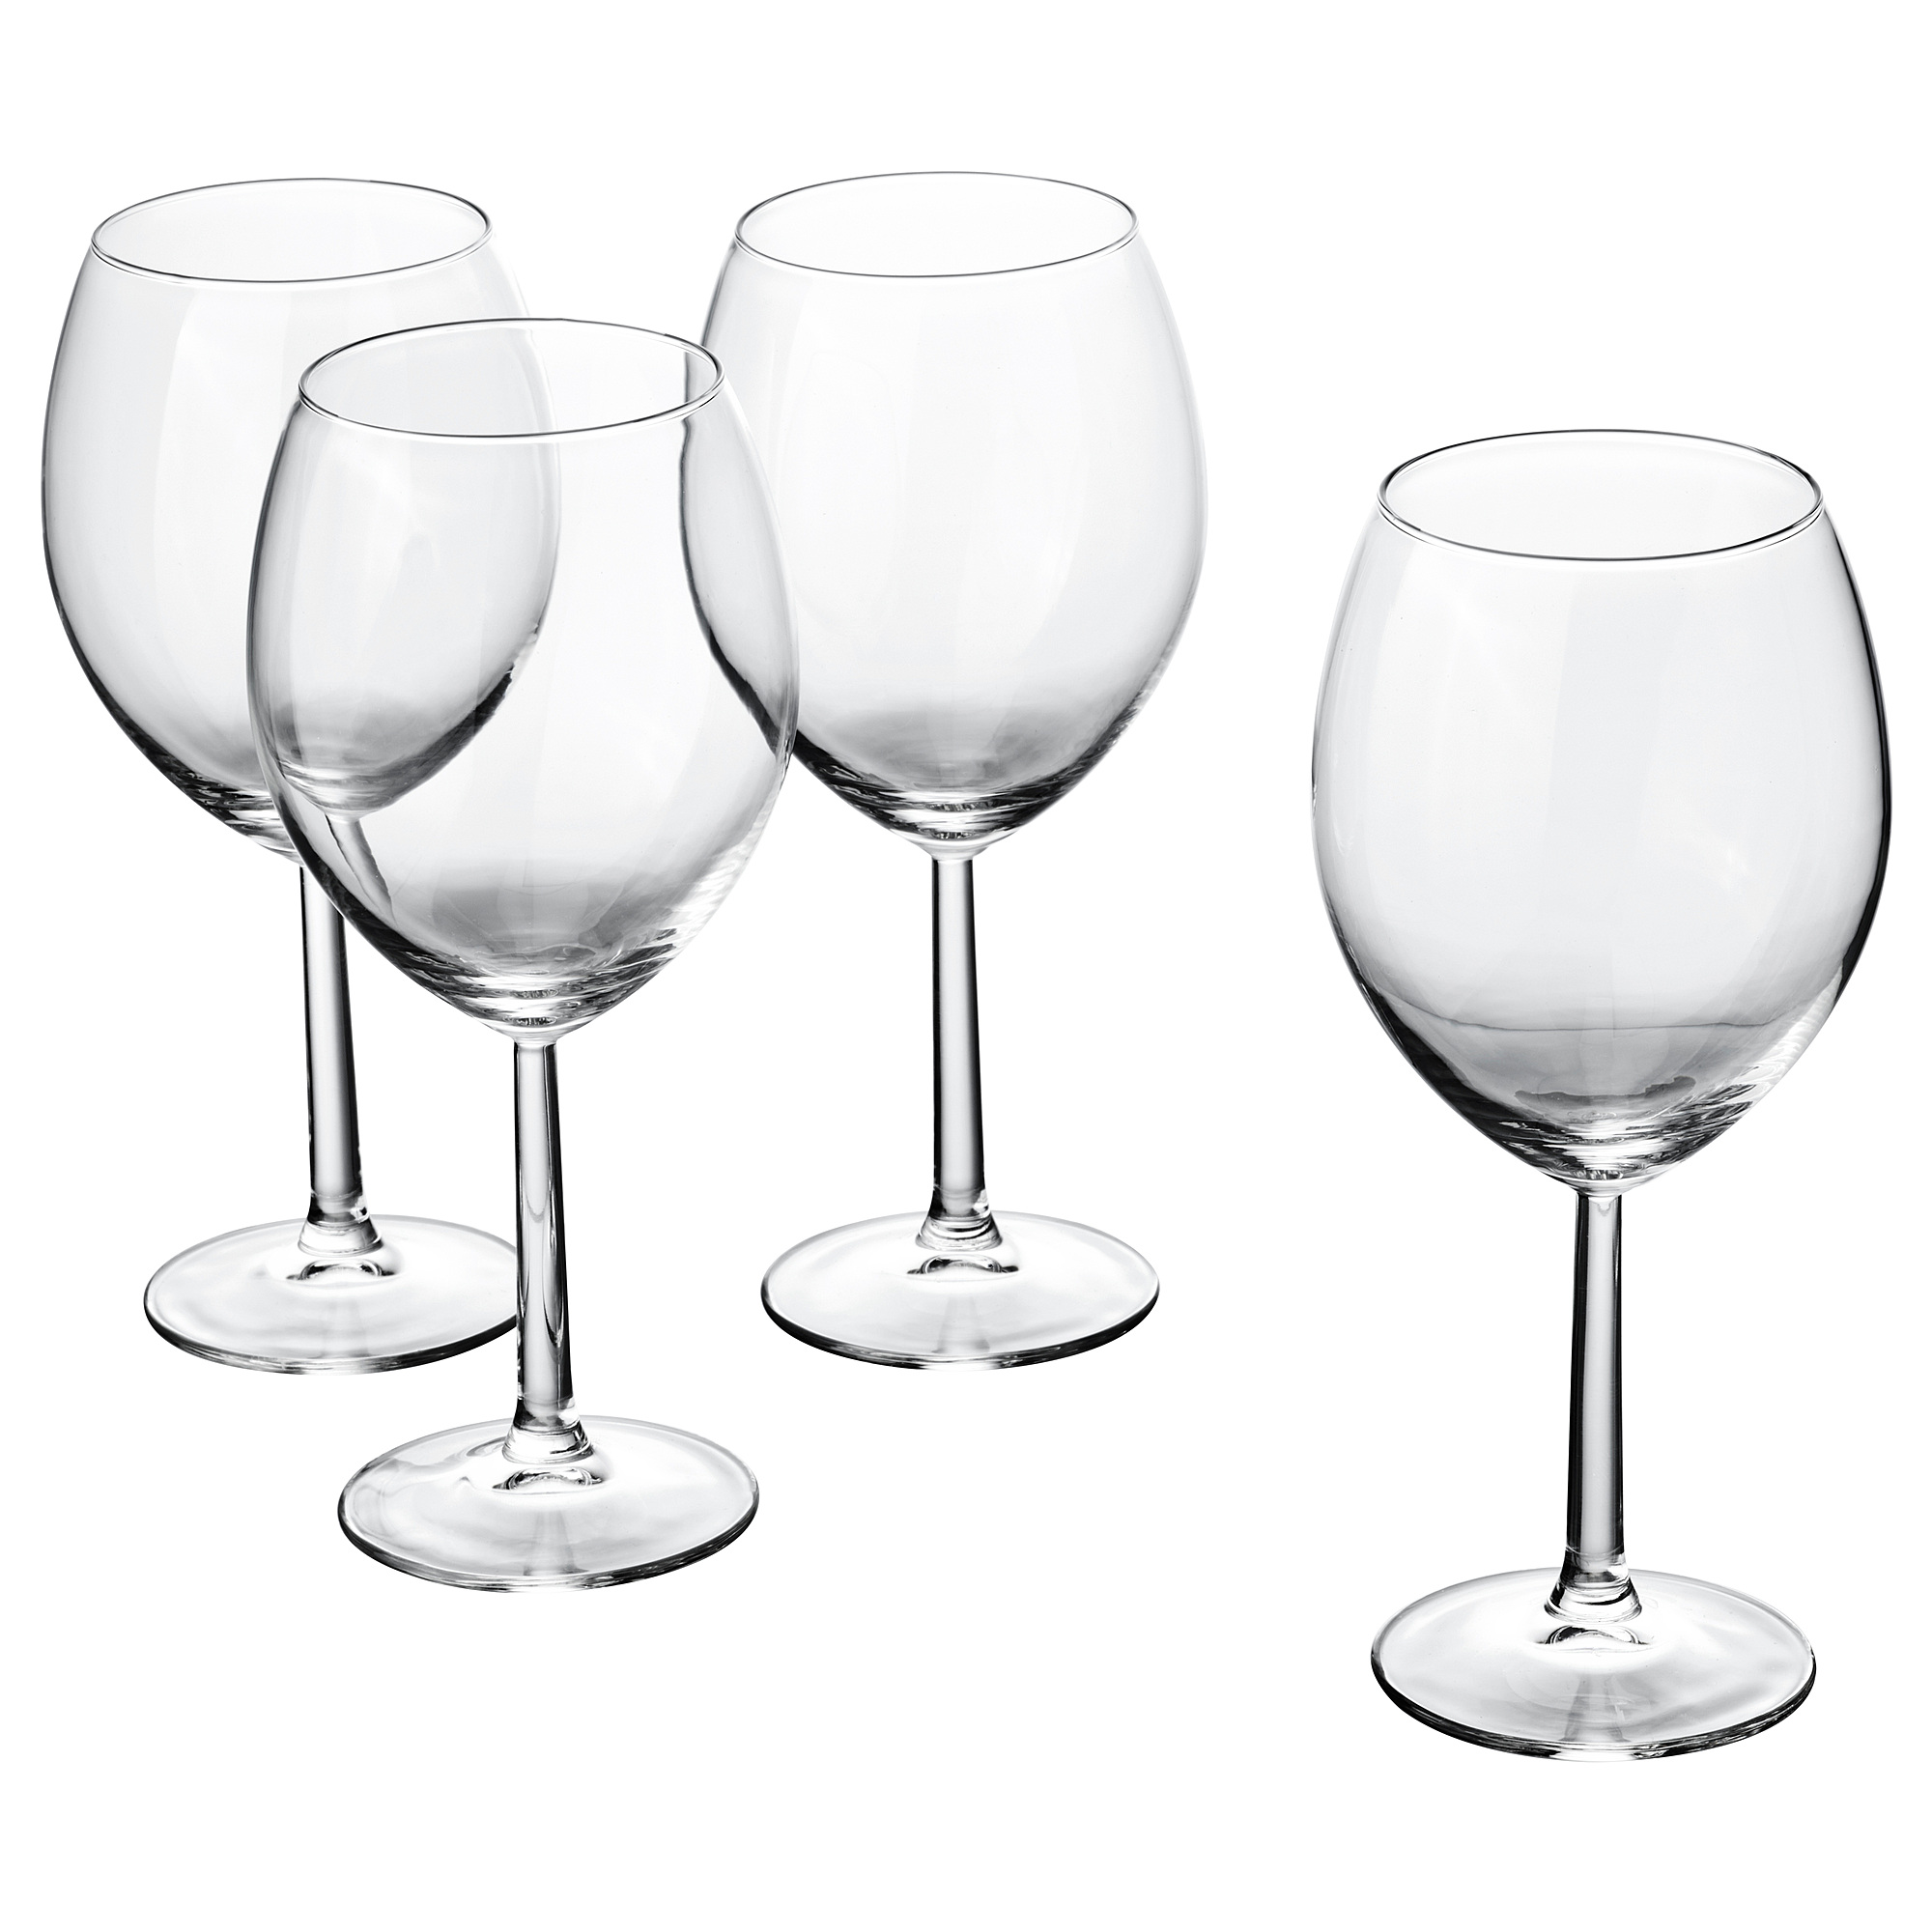 SVALKA wine glass